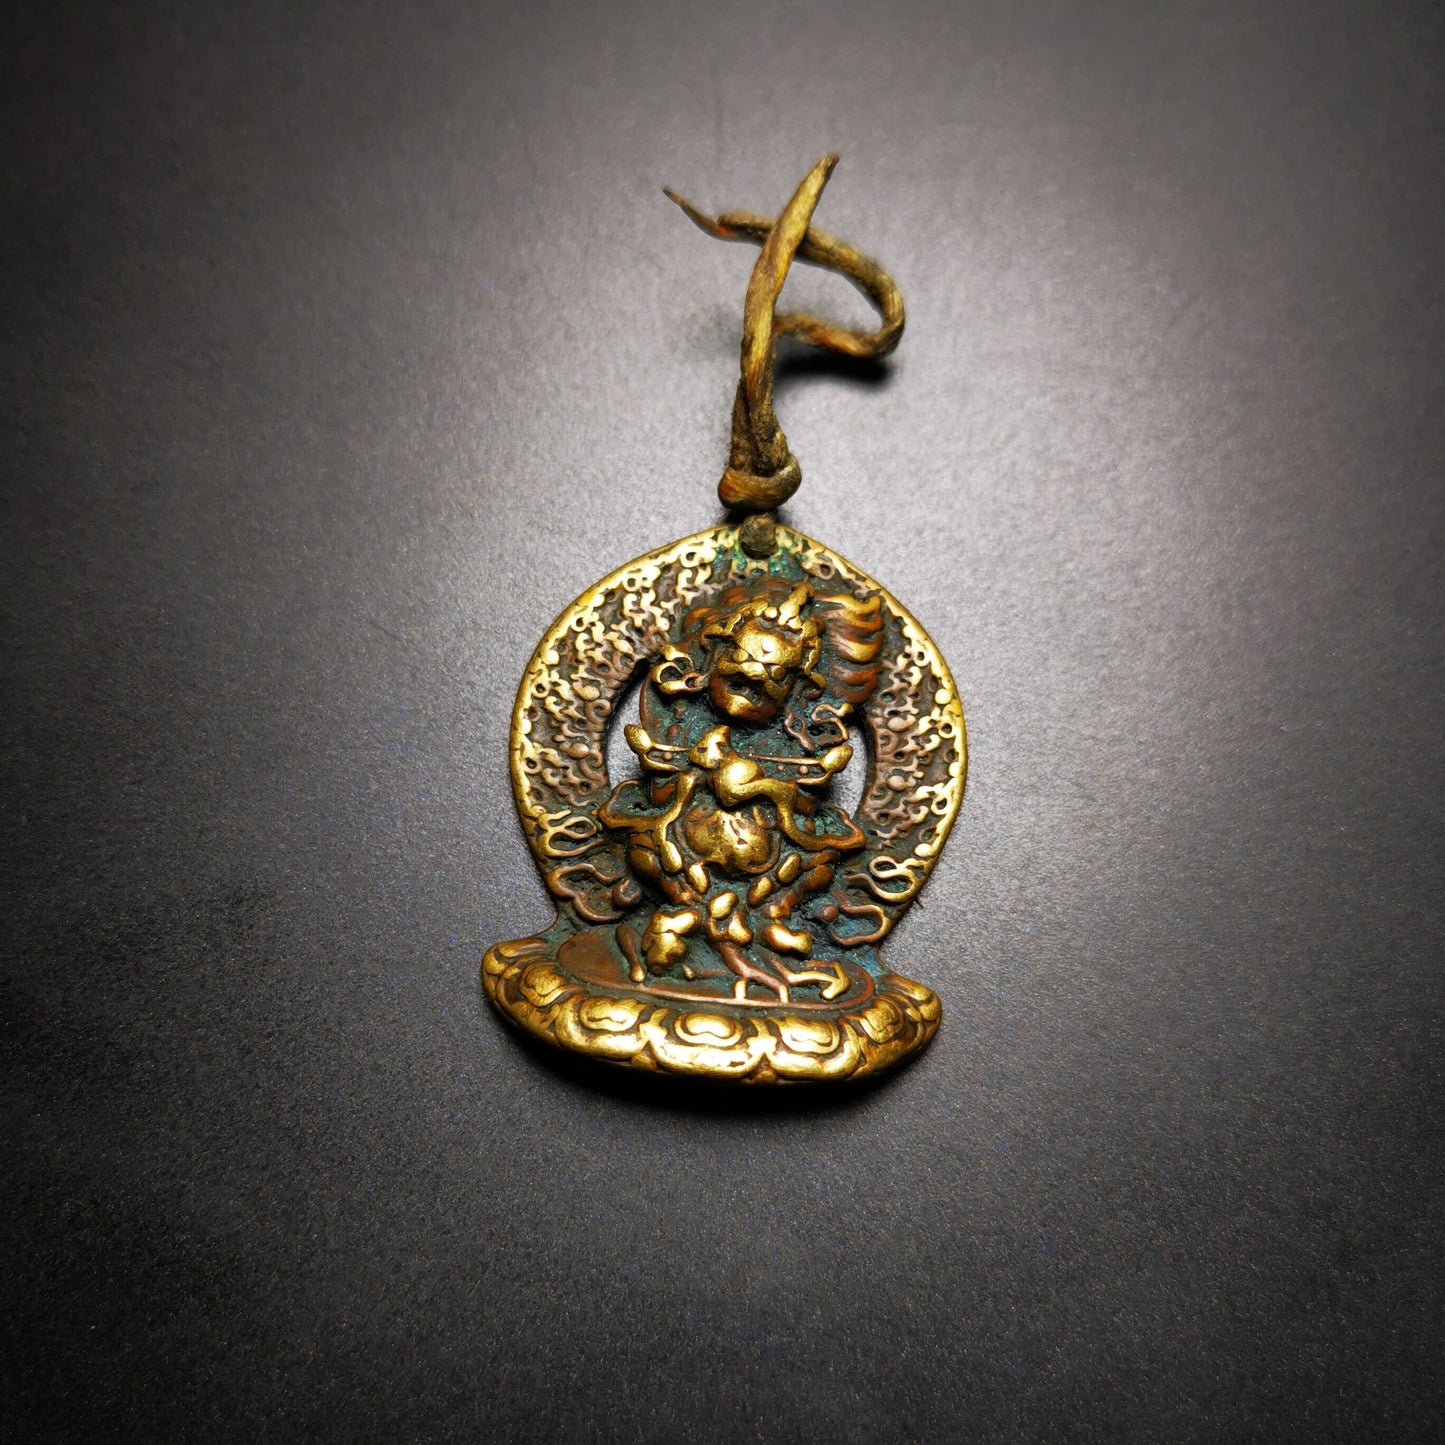 Gandhanra Antique Tibetan Buddhism Amulet Pendant,Kurukulla, ,Mother Buddha Kuru,80 Years Old